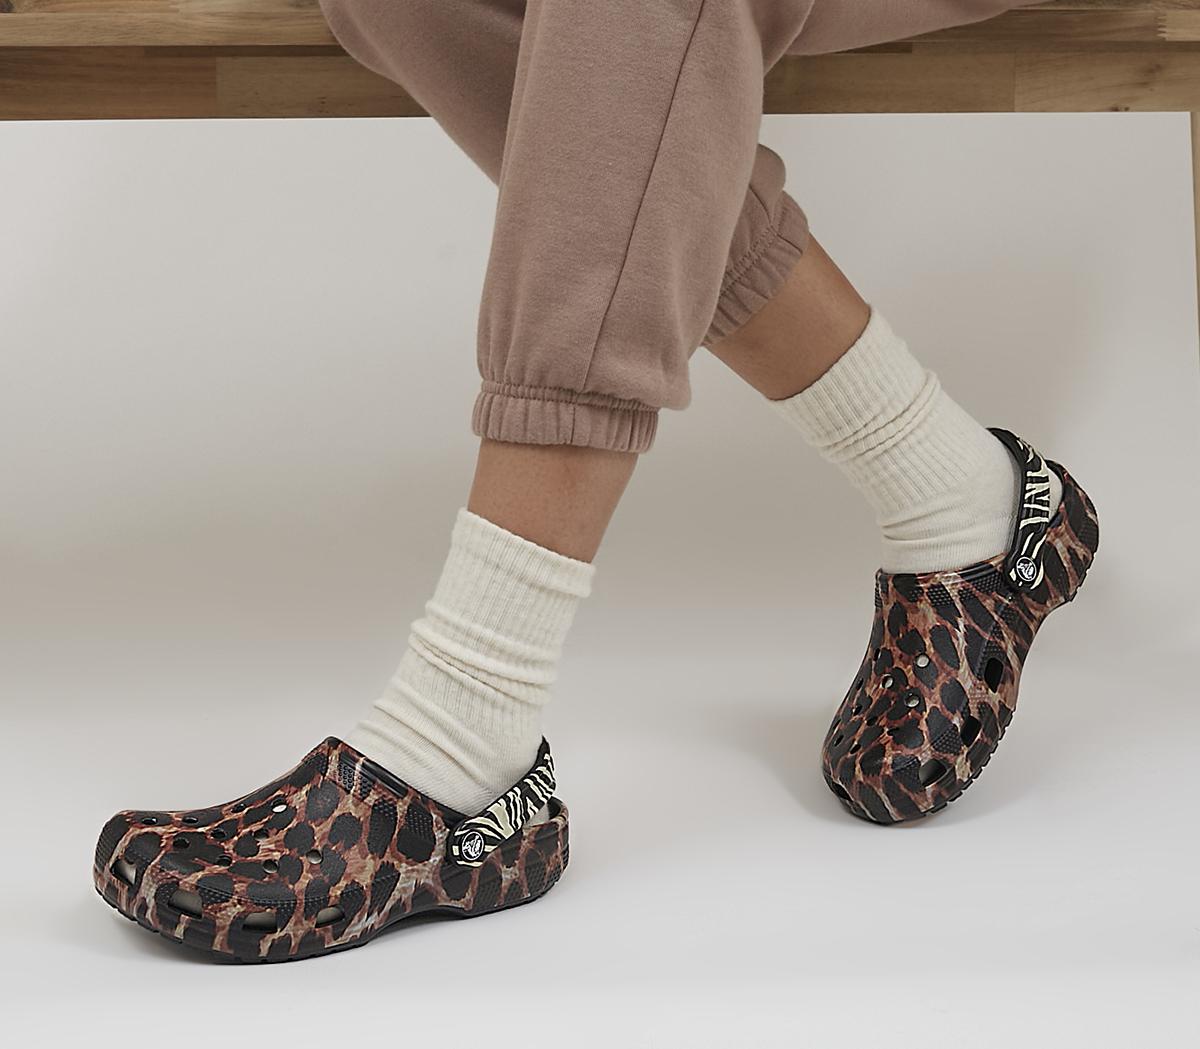 Crocs Classic Clogs Black Leopard - Animal-Print Shoes & Sandals